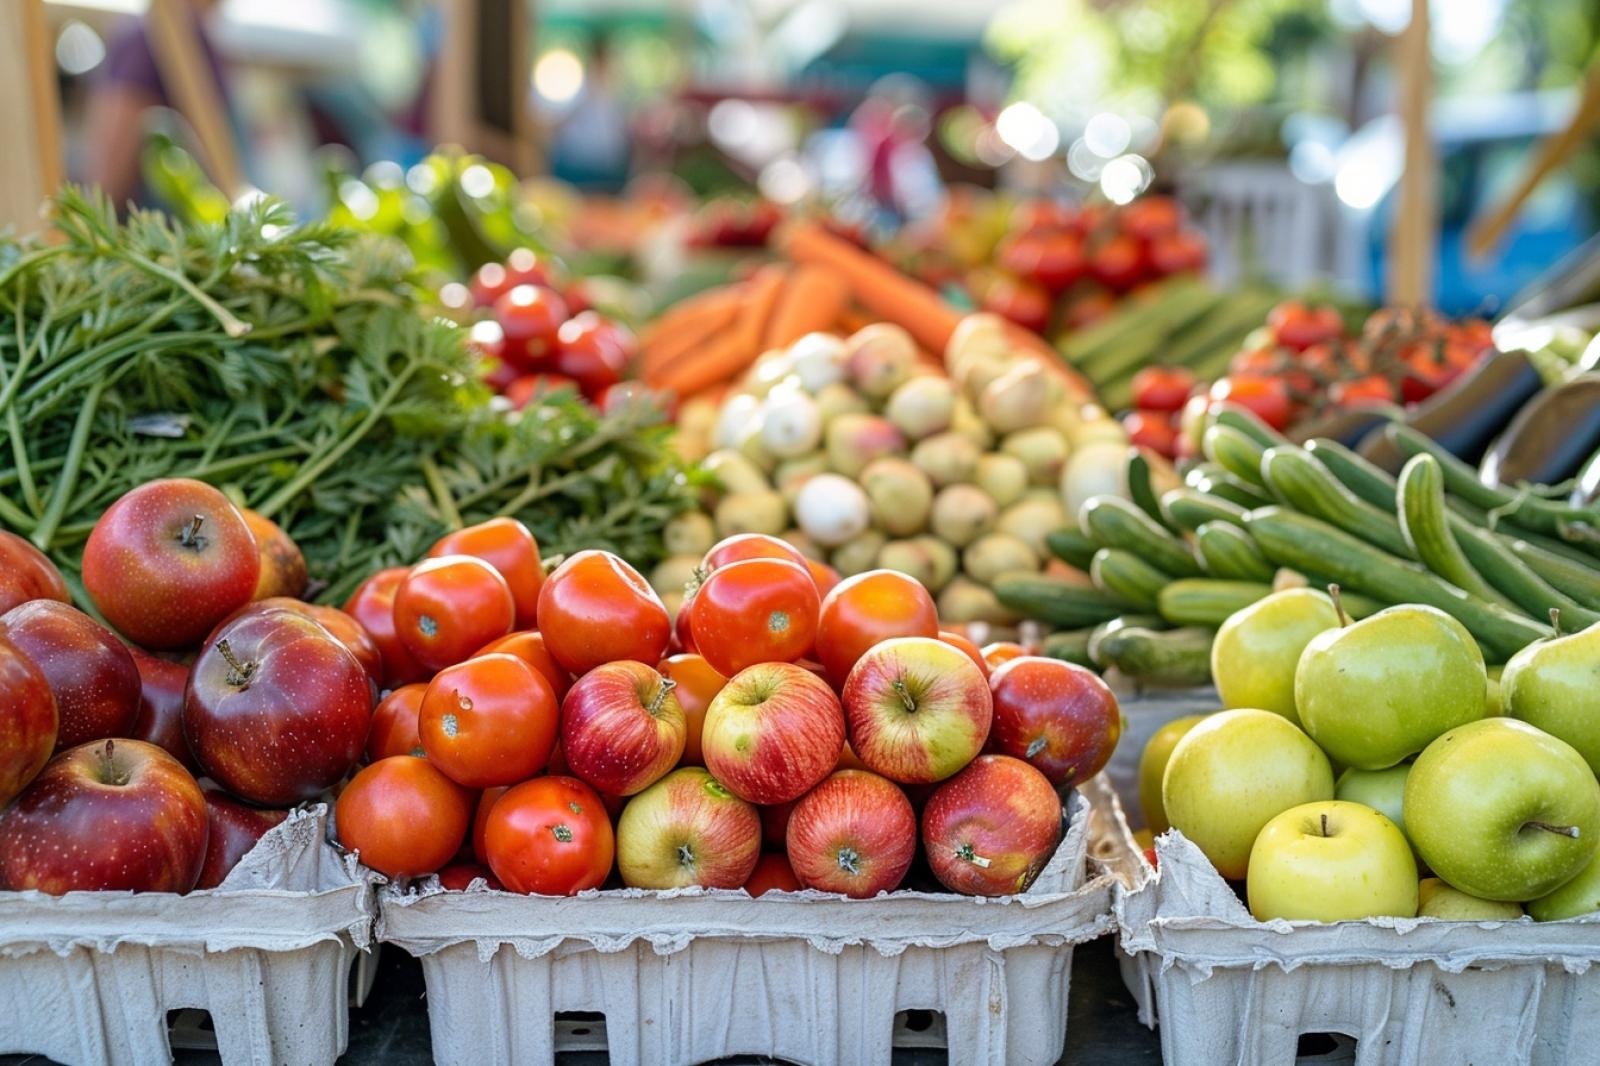 Fruits et légumes bio : pourquoi sont-ils plus chers ?